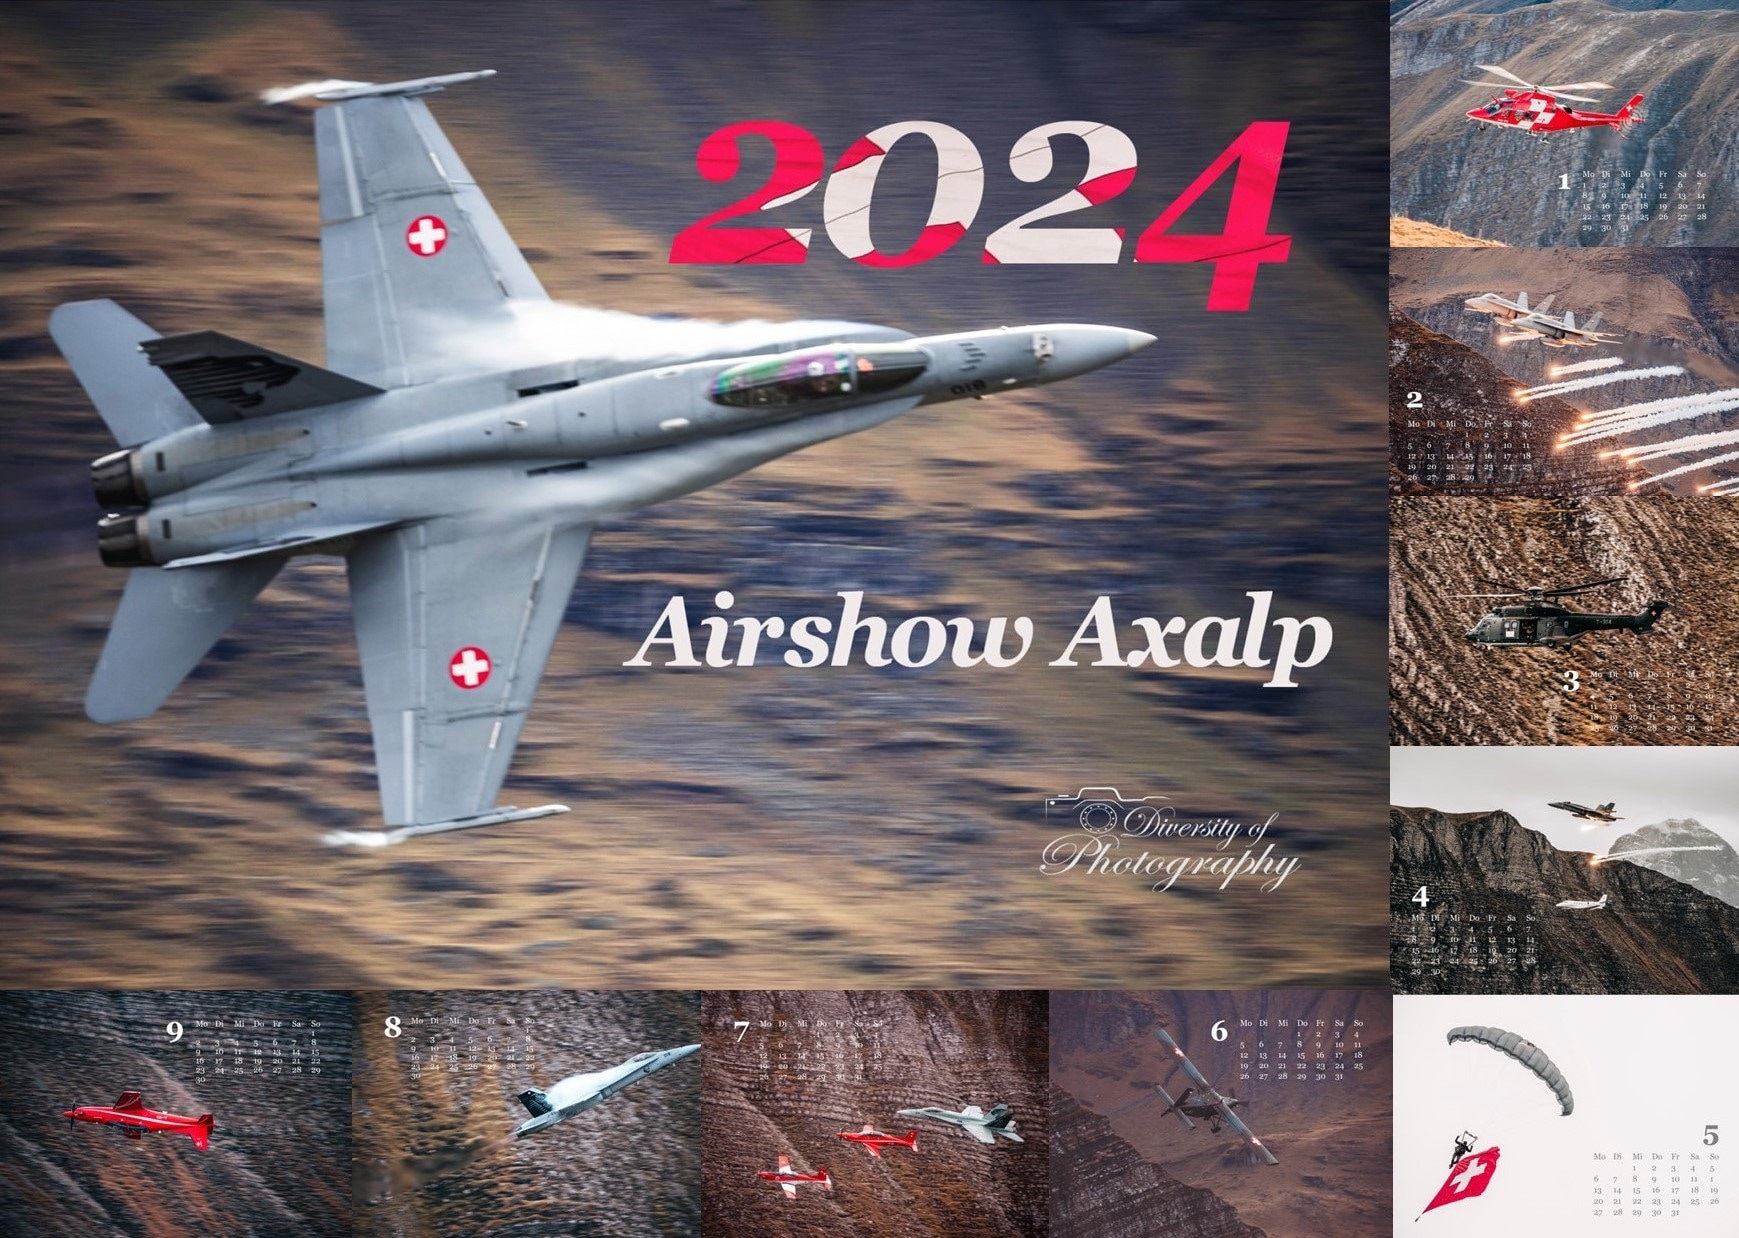 Calendario Aeronautica Militare 2024 (da parete)